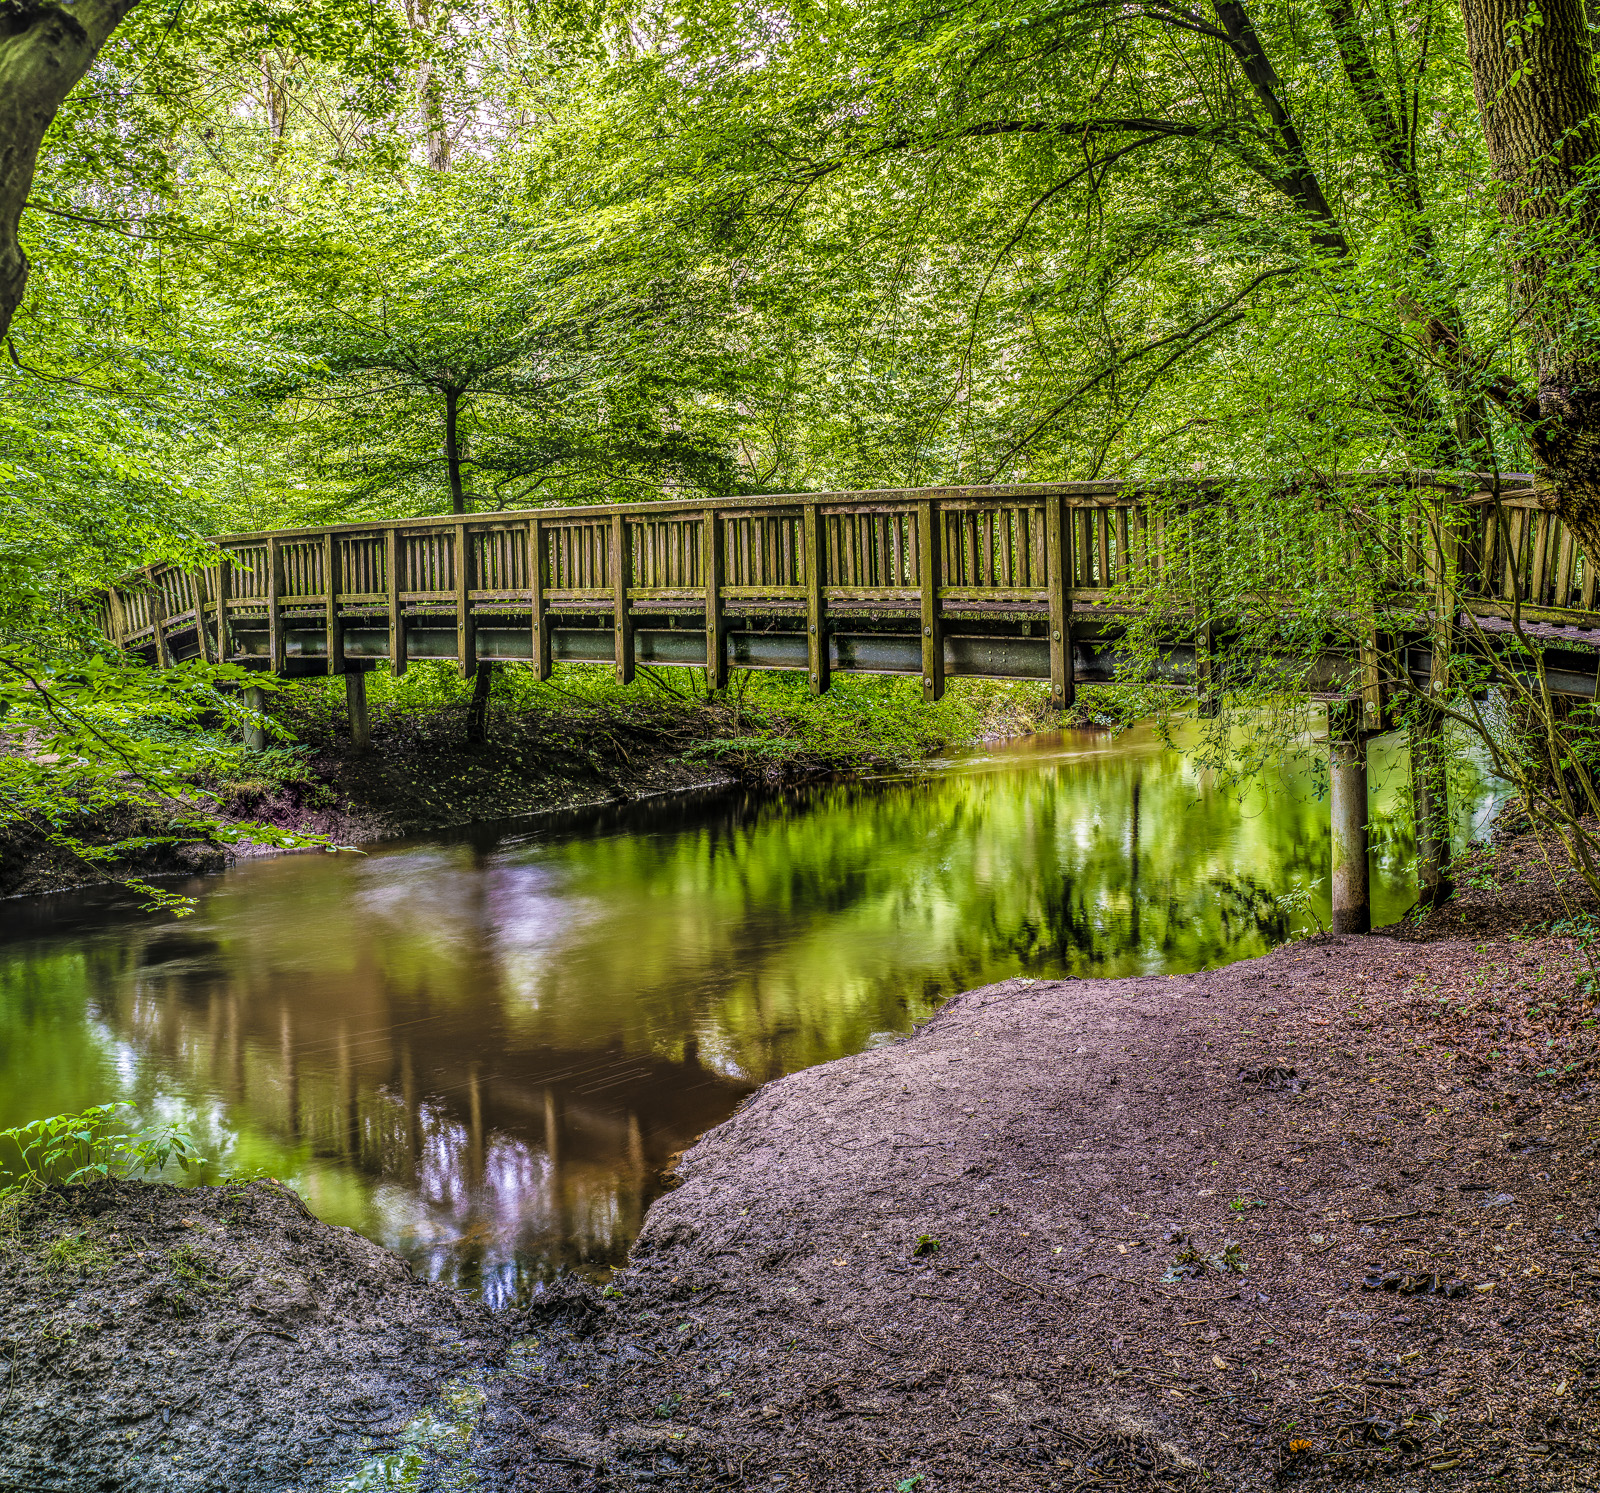 Eine Brücke über einen Bach im Wald teilt das fast quadratische Bild etwa in der Mitte. Vorn sandig-matschiges Ufer, oben und seitlich leuchtend grüne Laubbäume.